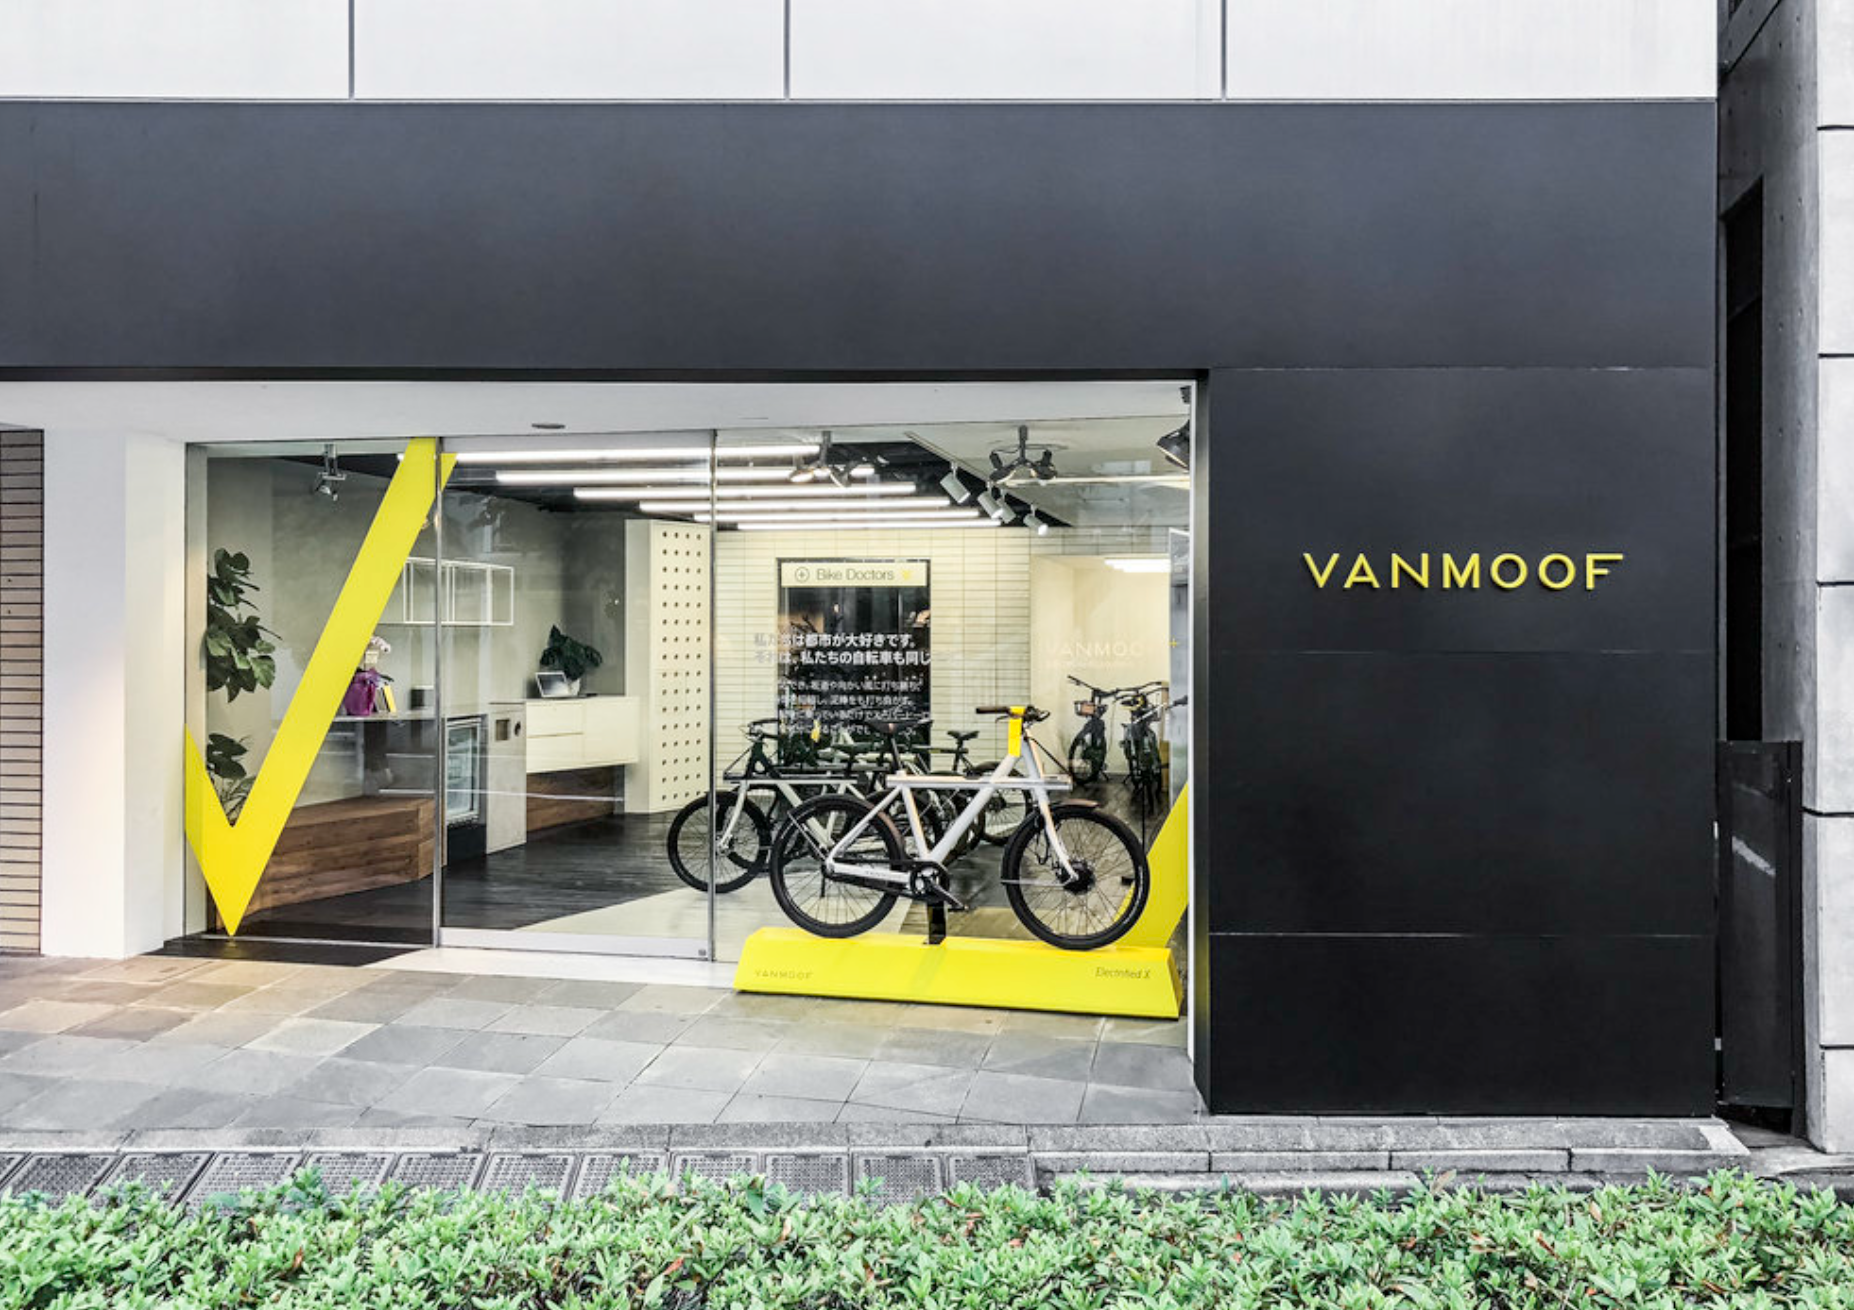 VanMoof's Tokyo store